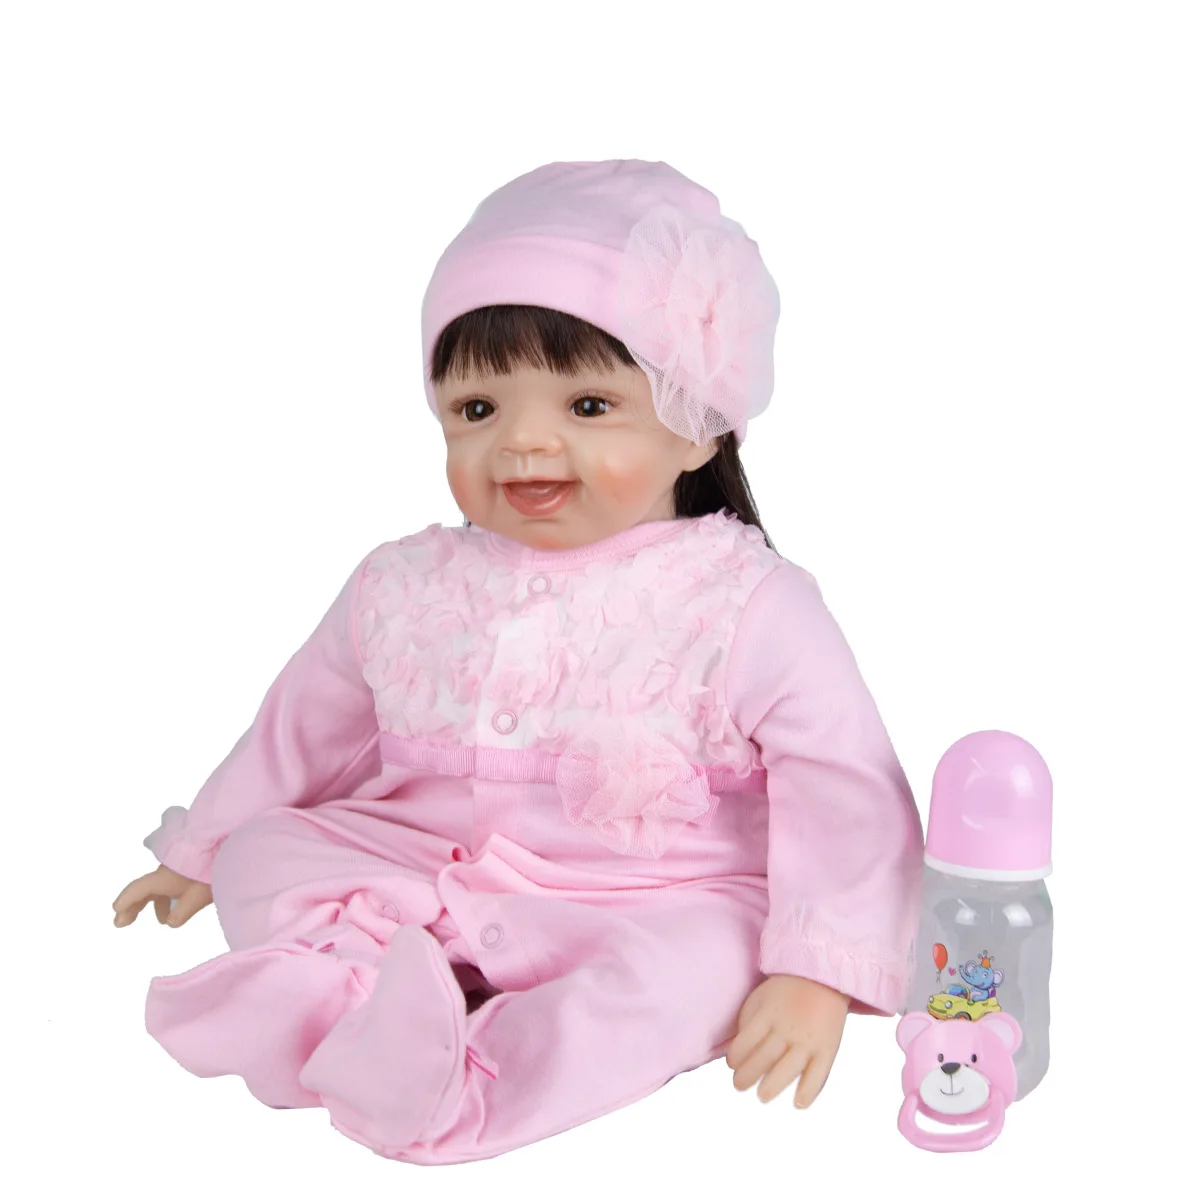 Dlhé Účesy 55 Cm Batoľa Reborn Baby Doll Odbavenie Látkové Telo Dievča Reborn Baby Doll Playmates Hračka Pre Deti, Deň Dary 0